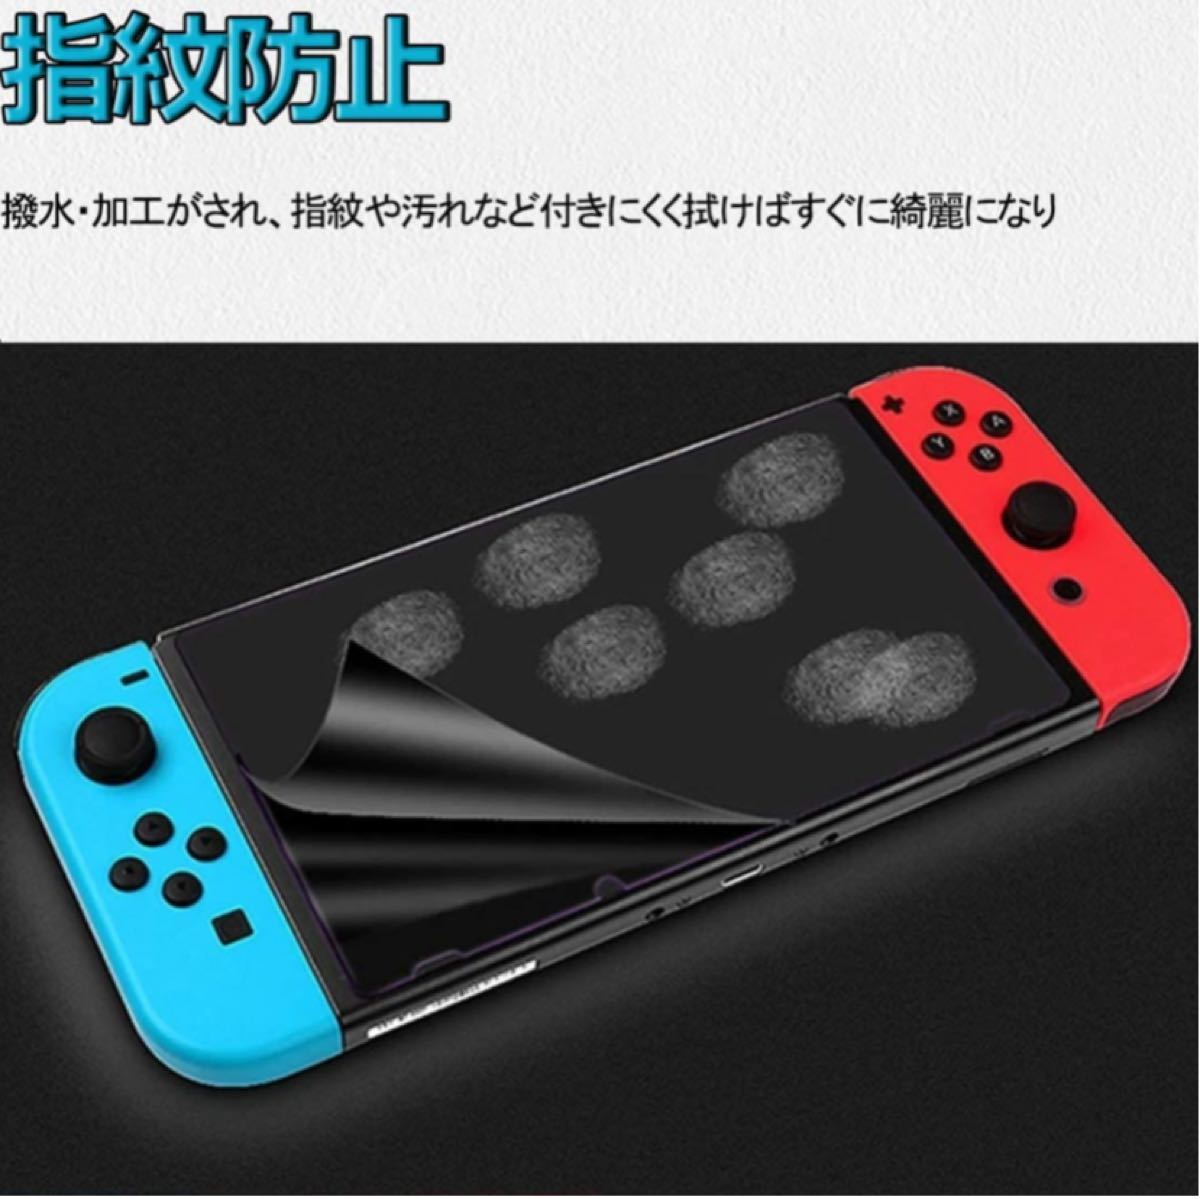 【3枚入り】Nintendo Switch用 保護フィルム ブルーライトカット PET素材 高光沢 極薄 柔らかい